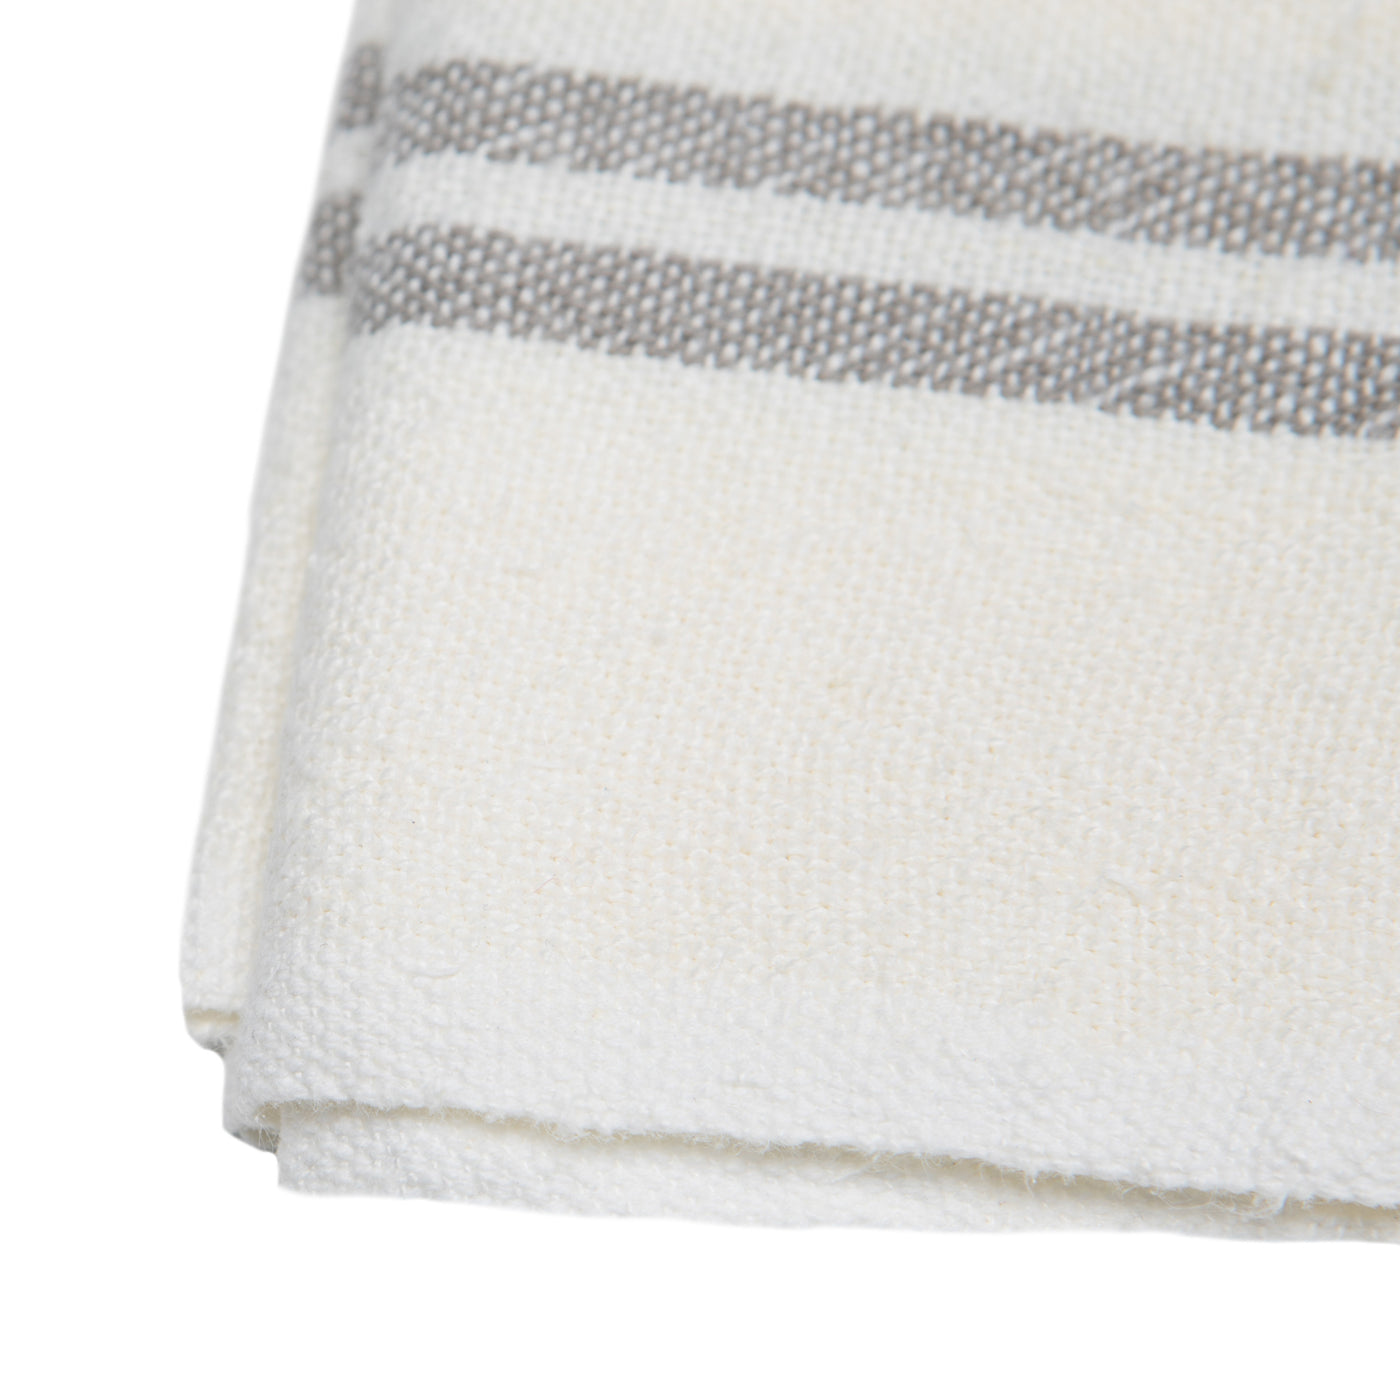 Vintage Linen Kitchen Towels Ivory & Grey, Set of 2